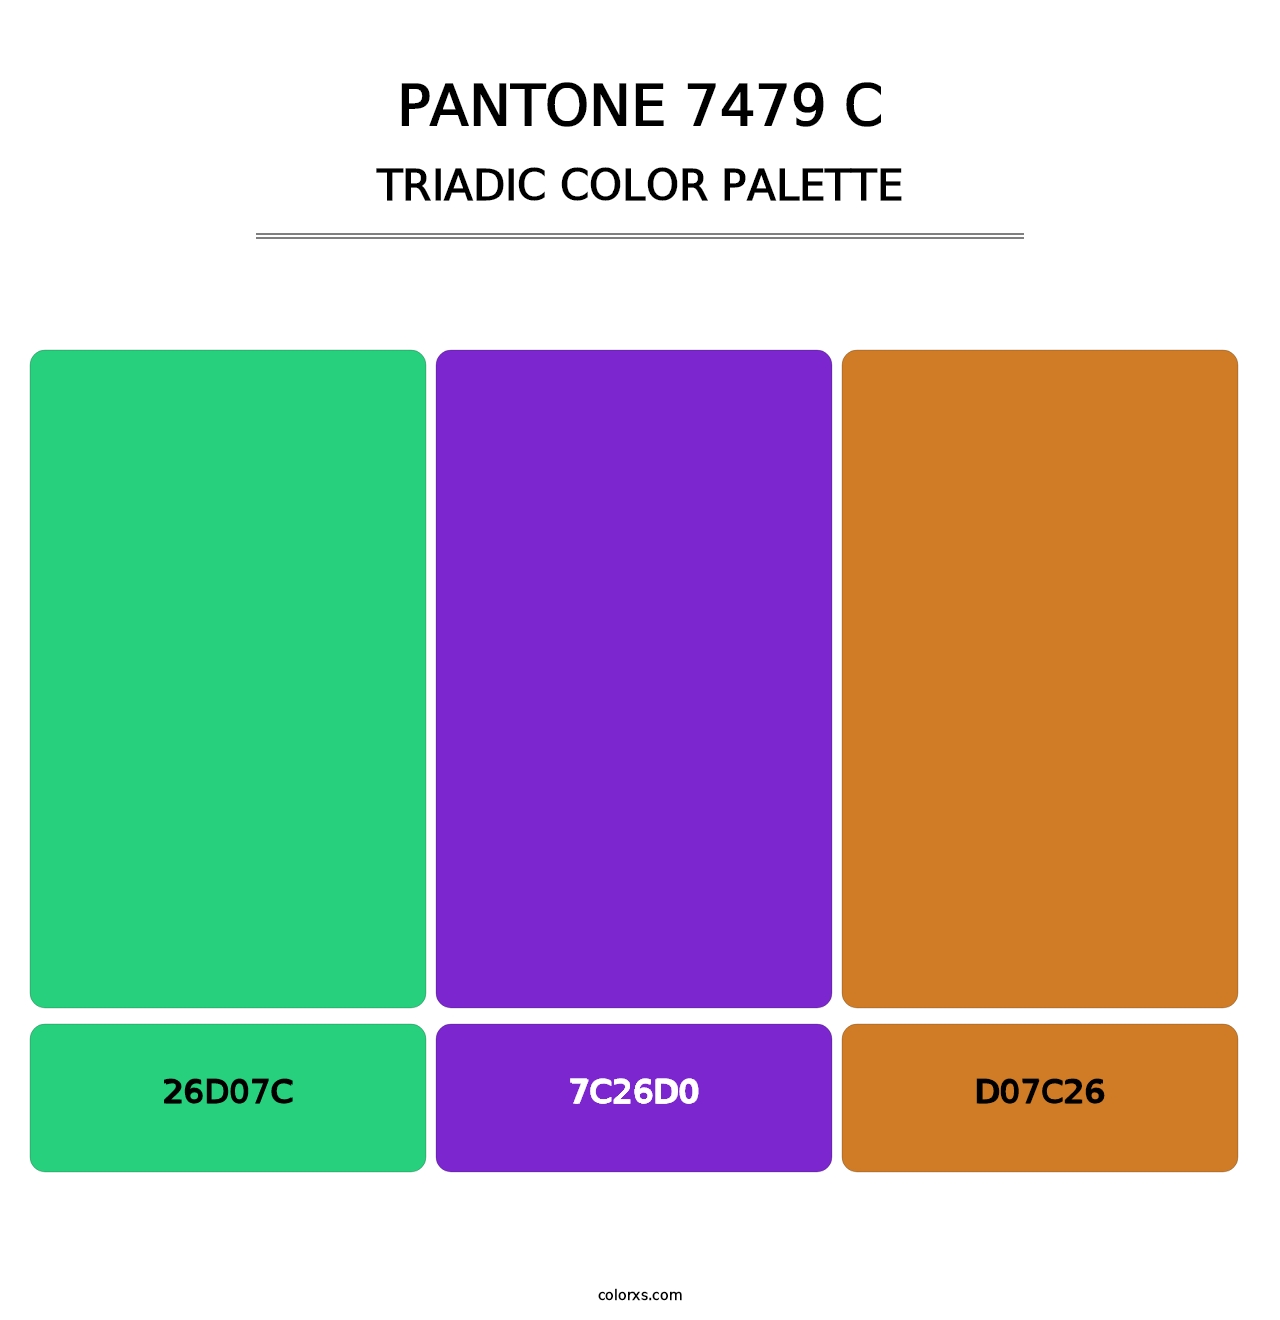 PANTONE 7479 C - Triadic Color Palette